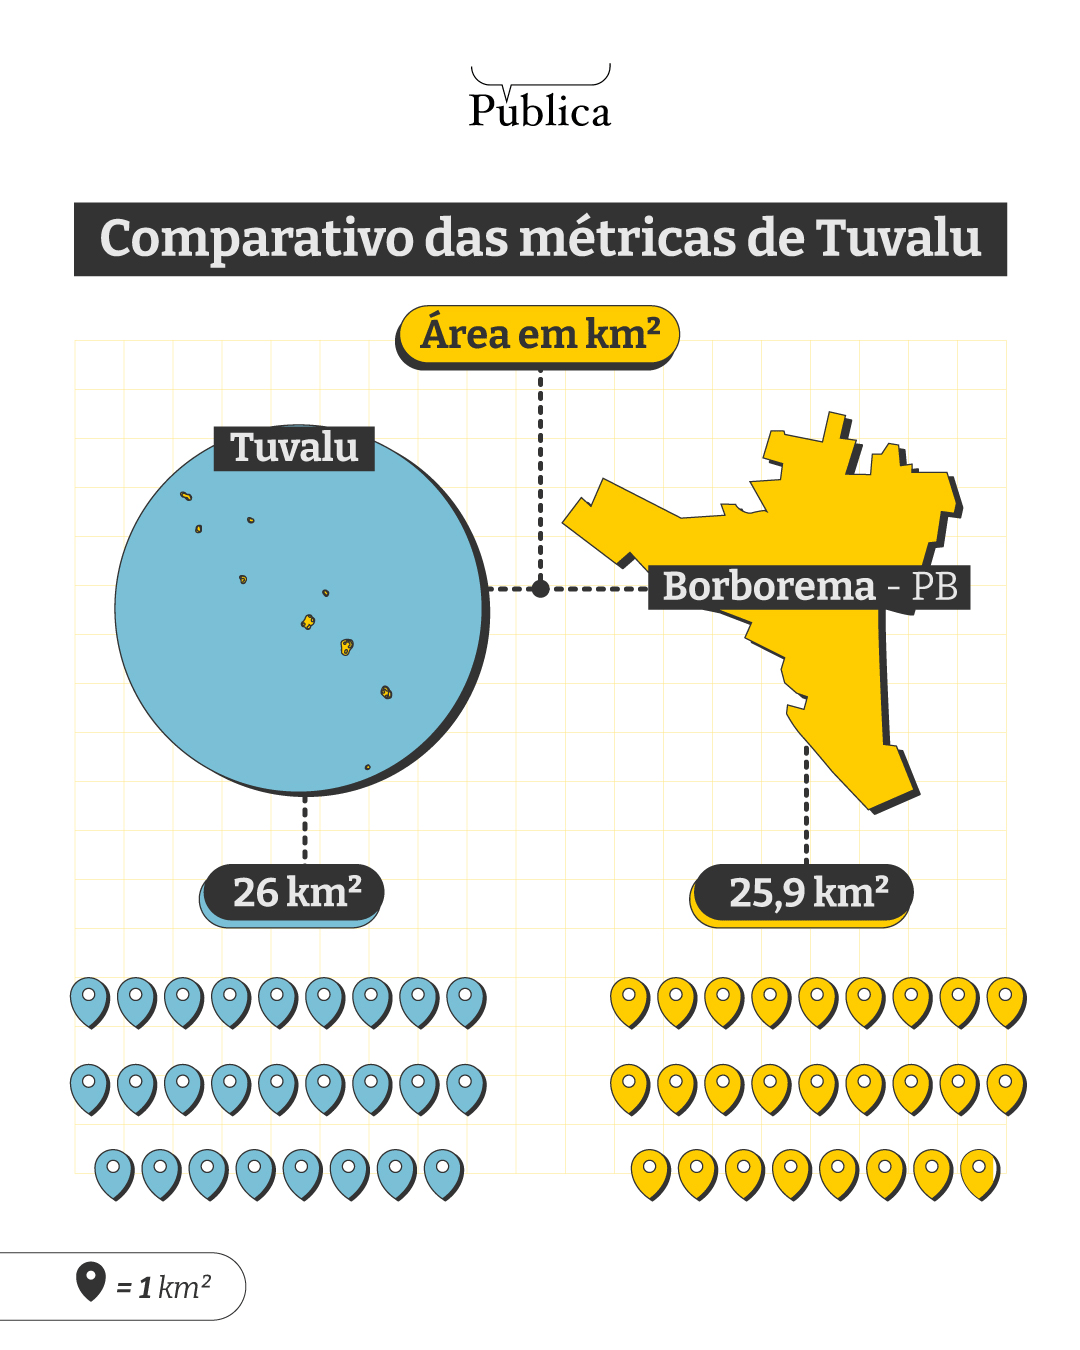 Infográfico mostra comparativo das métricas de Tuvalu